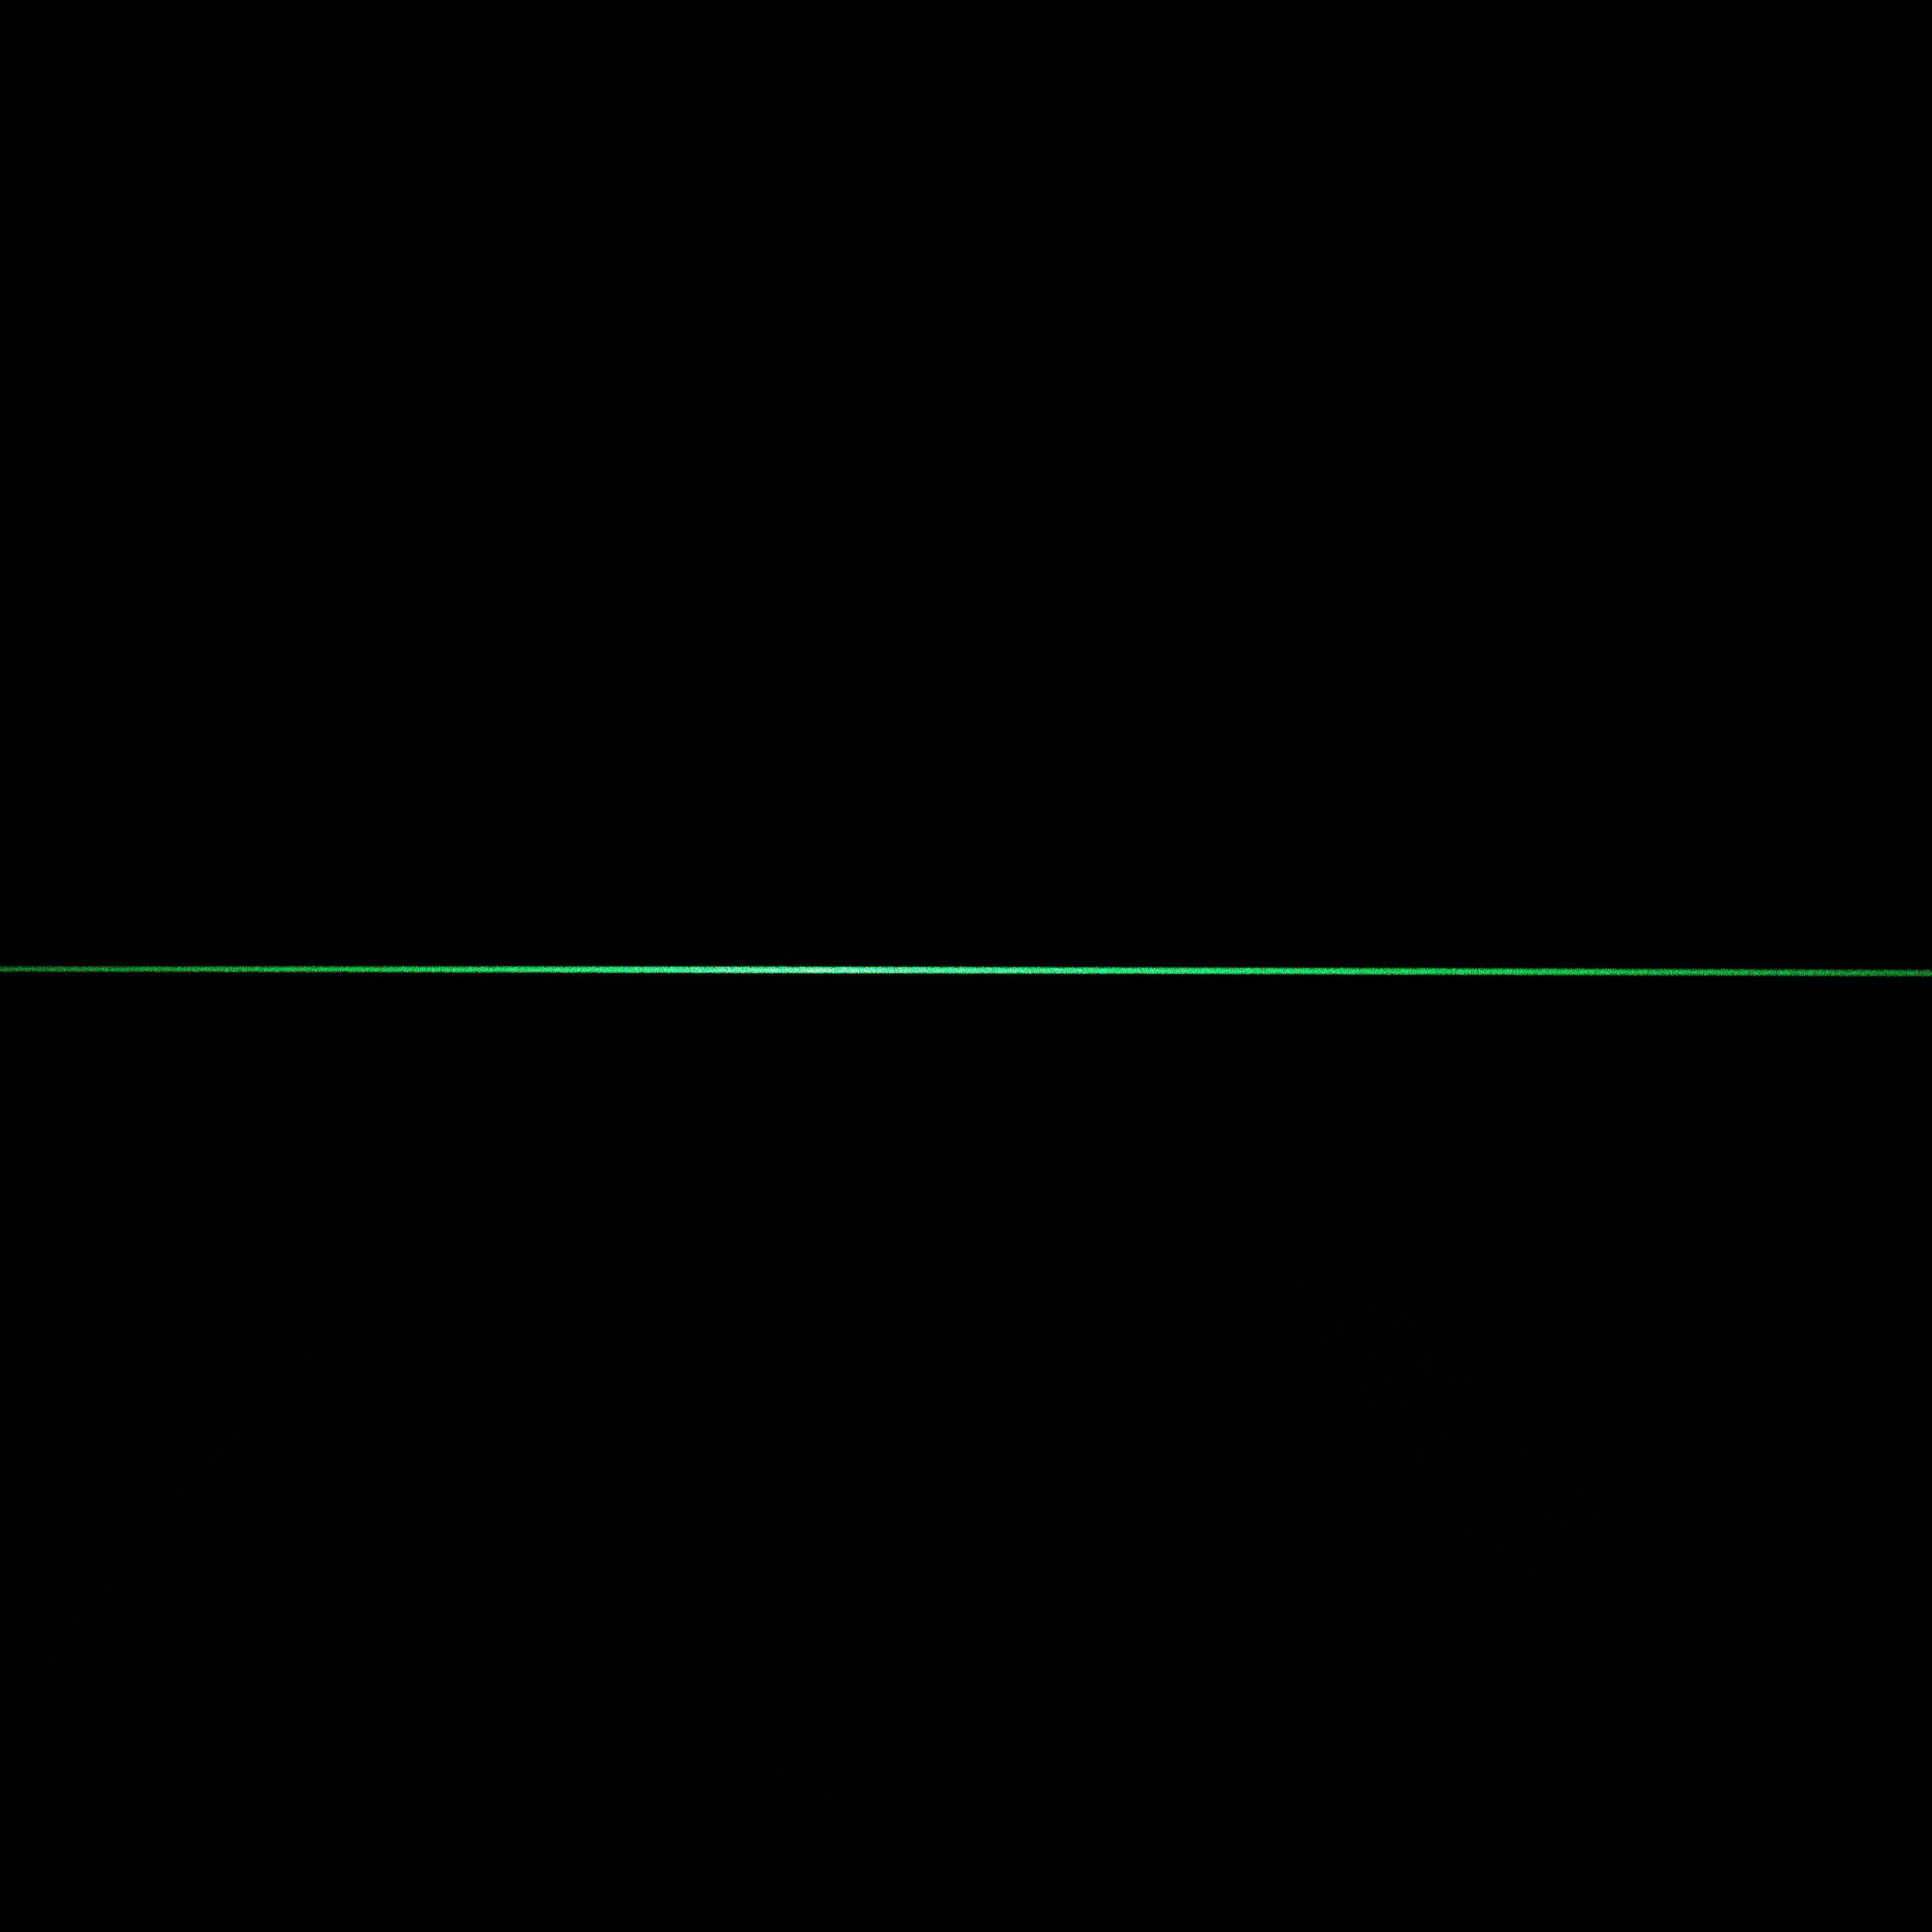 Picotronic Linienlaser grün, 532nm, 90°, 24V DC, Ø20x135 mm, Fokus einstellbar, Laserklasse 2M, M12…